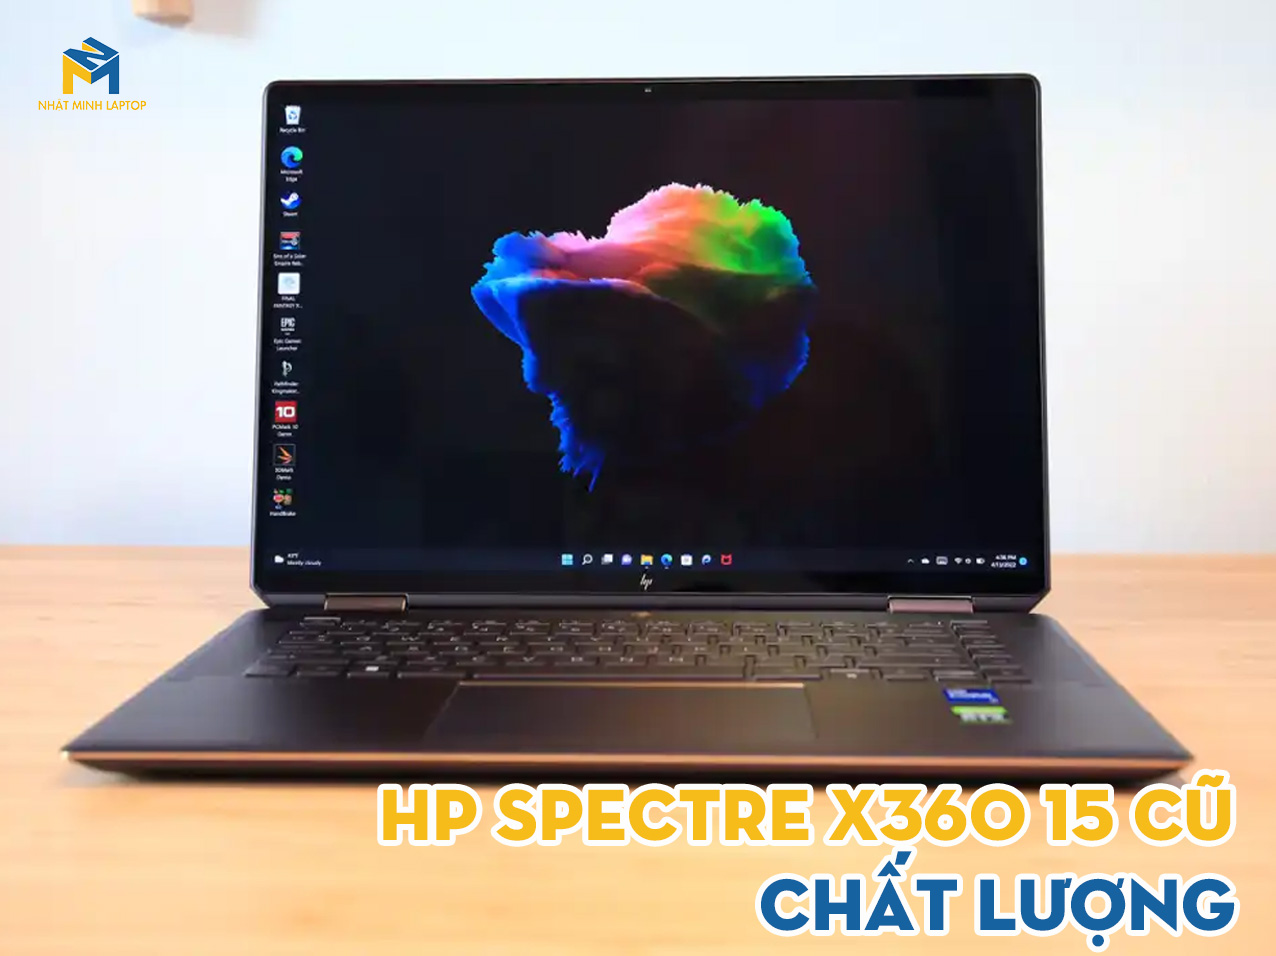 Tìm hiểu Laptop HP Spectre X360 15 cũ chất lượng tại Nhật Minh